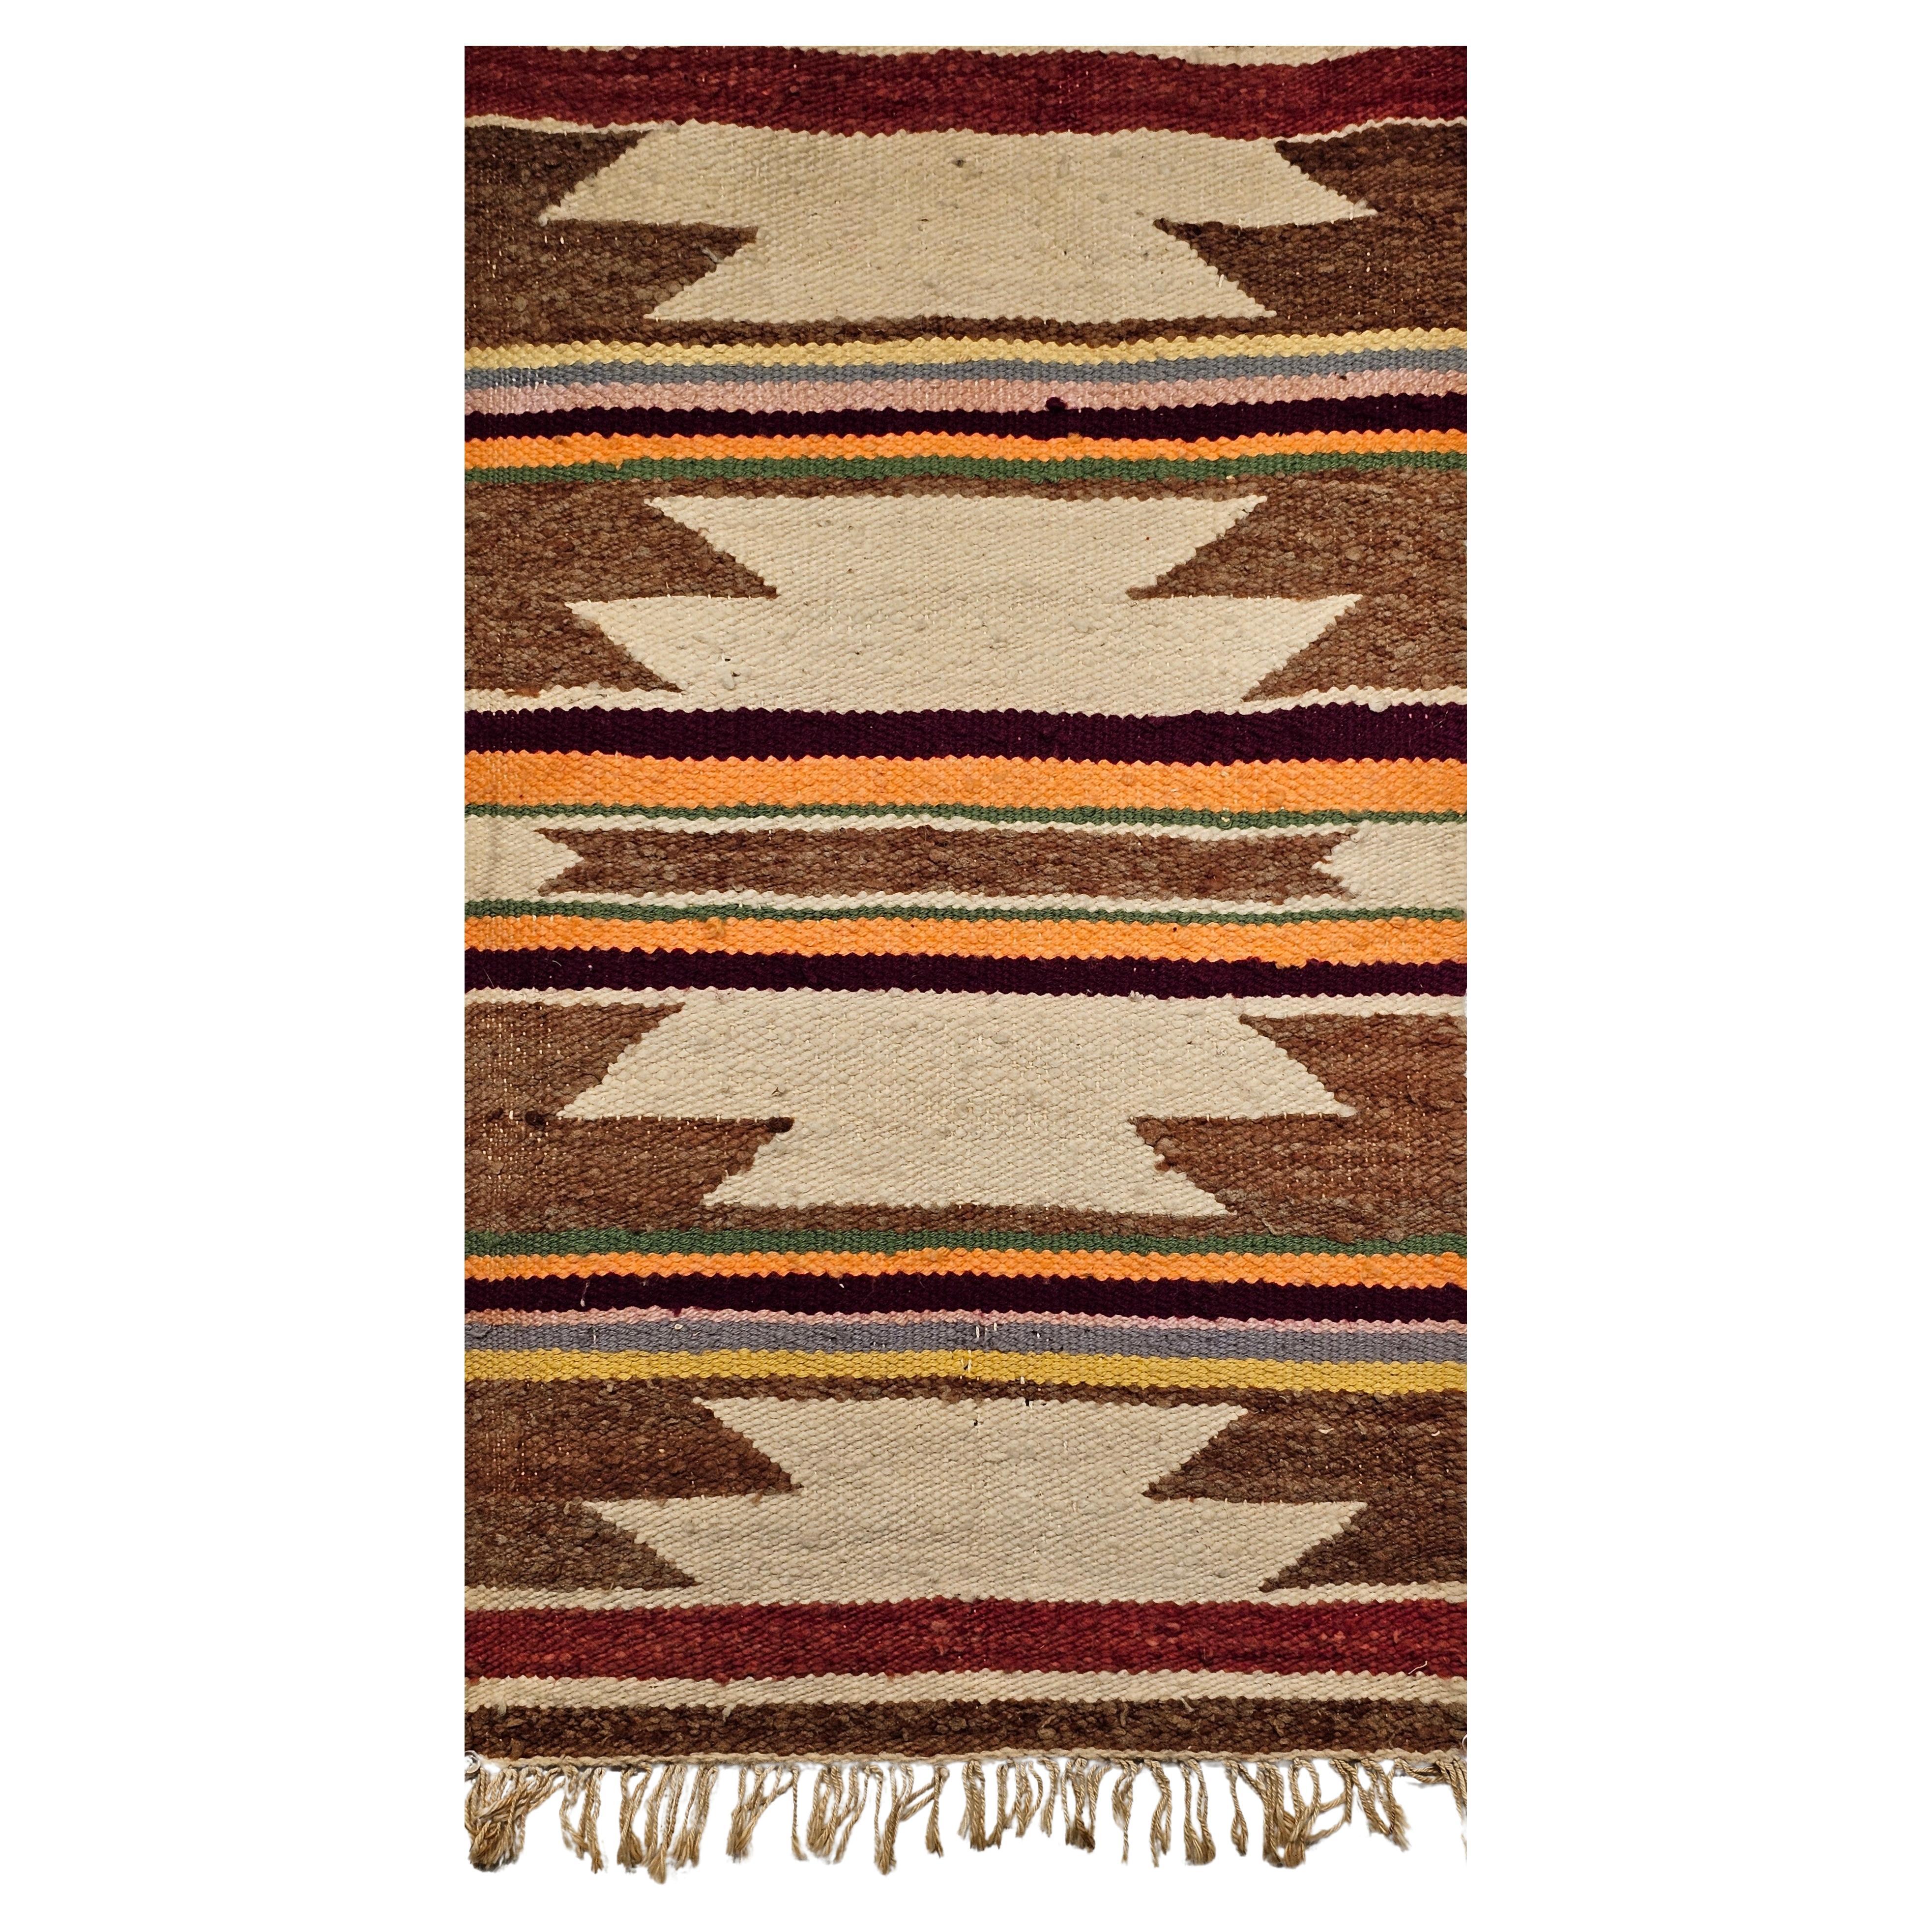 Alter Navajo-Teppich mit breitem Bandmuster, elfenbeinfarben, rostfarben